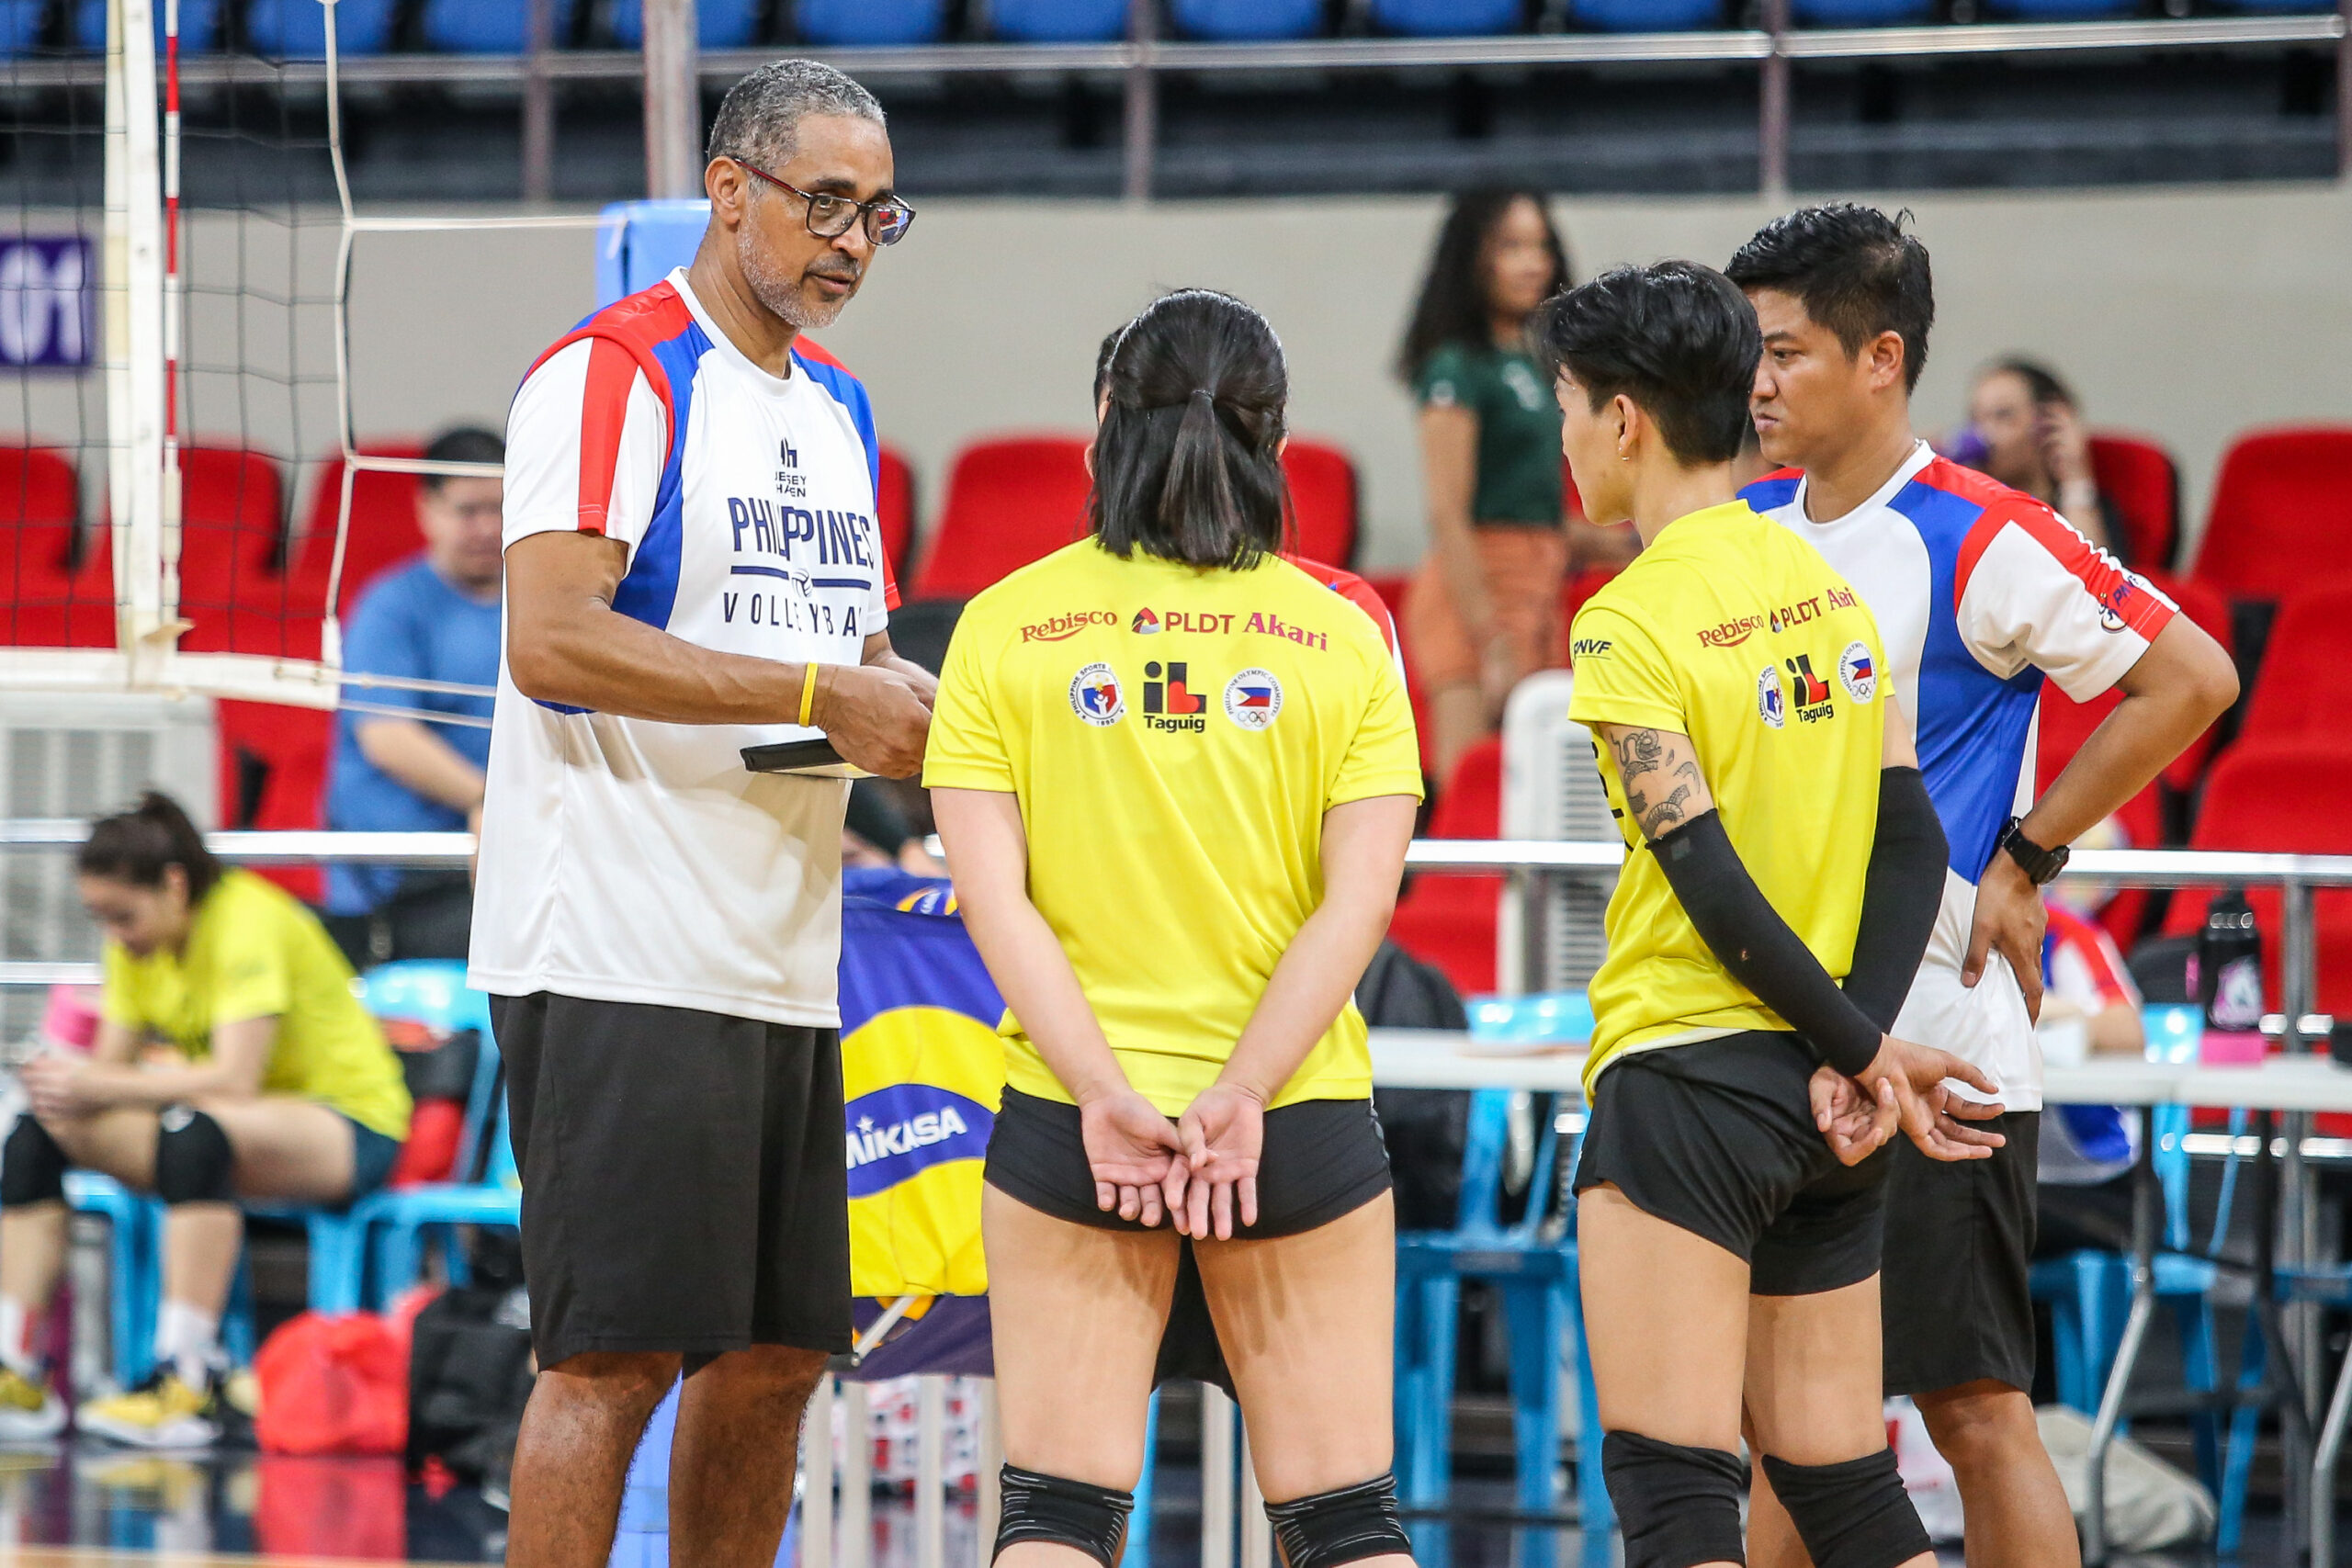 Philippine women's volleyball team coach Jorge Souza De Brito